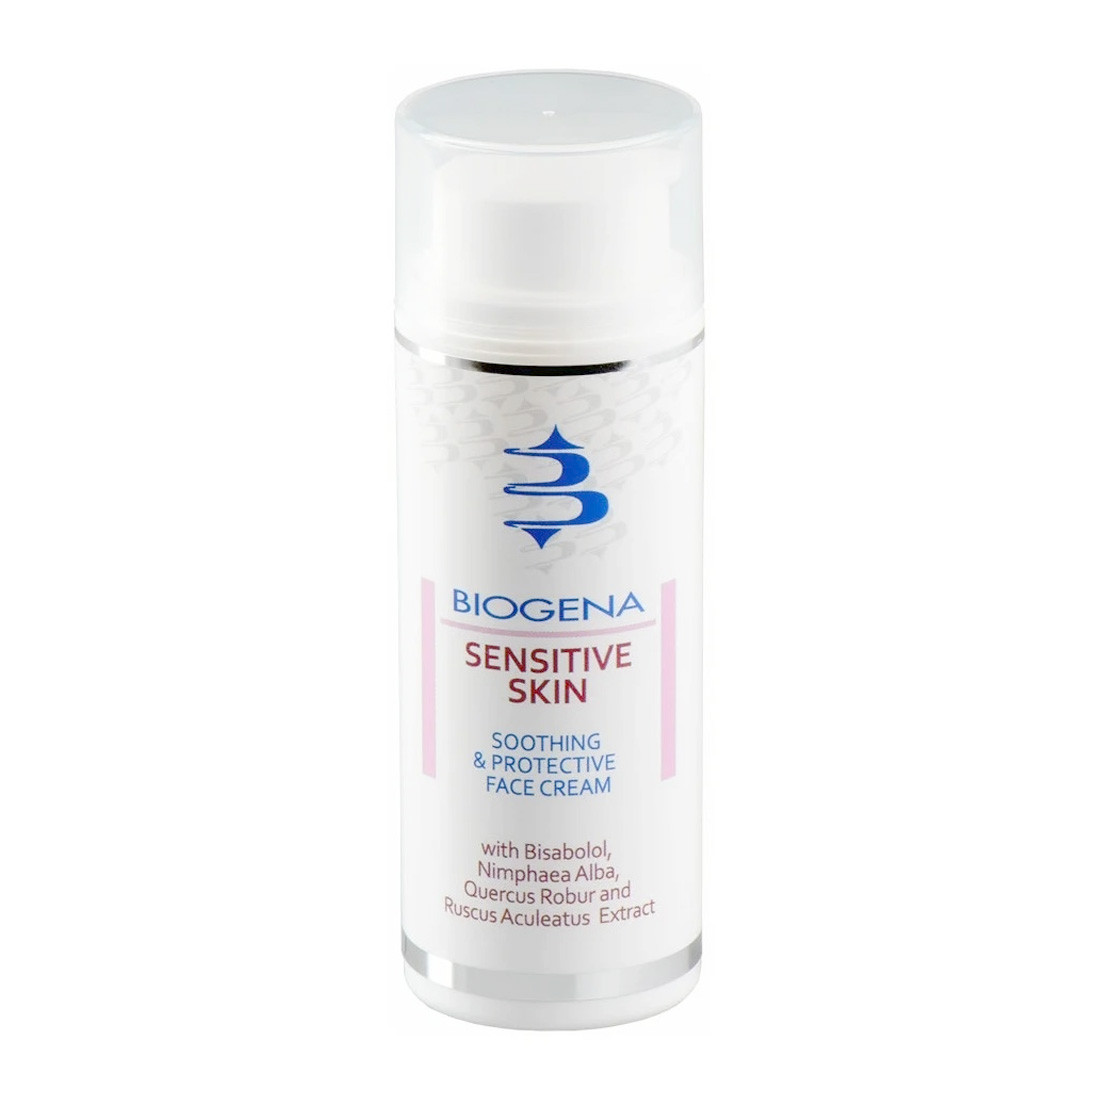 Специальный успокаивающий и защитный крем для гиперчувствительной кожи Biogena Sensitive Skin